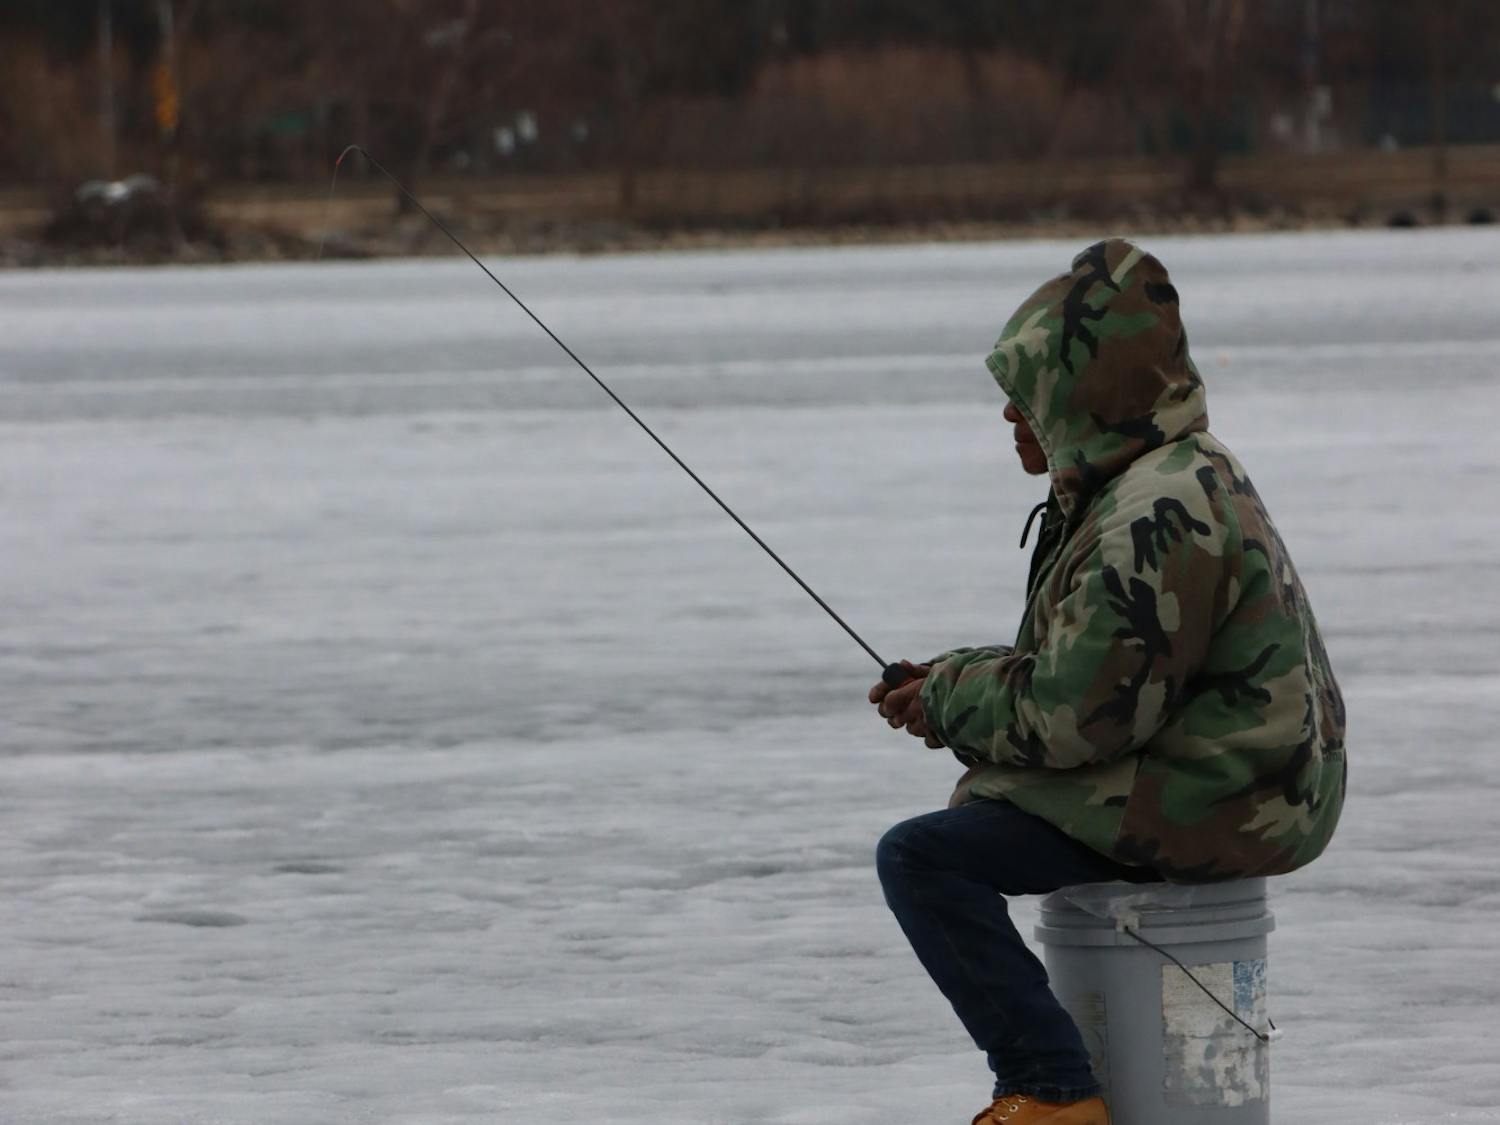 Ice fishing on Lake Monona